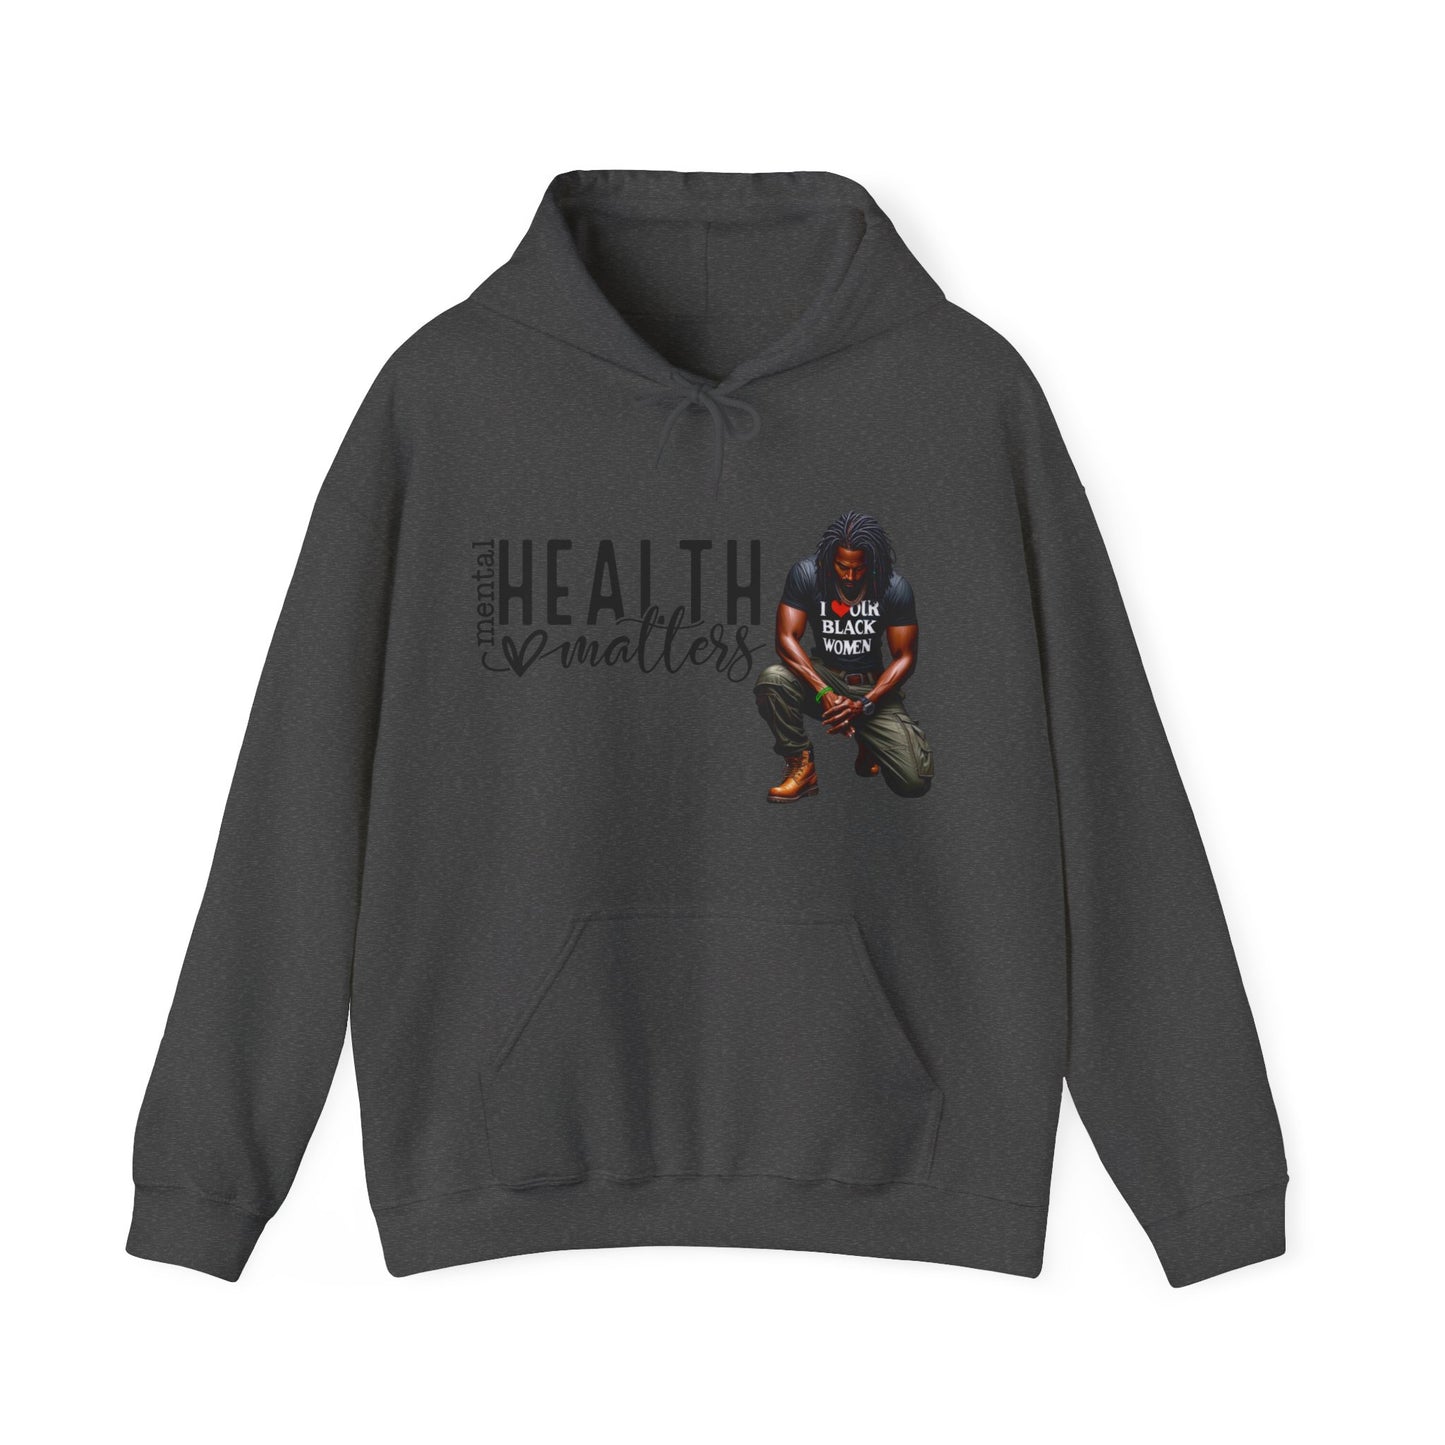 His Mental Health Matters Hooded Sweatshirt